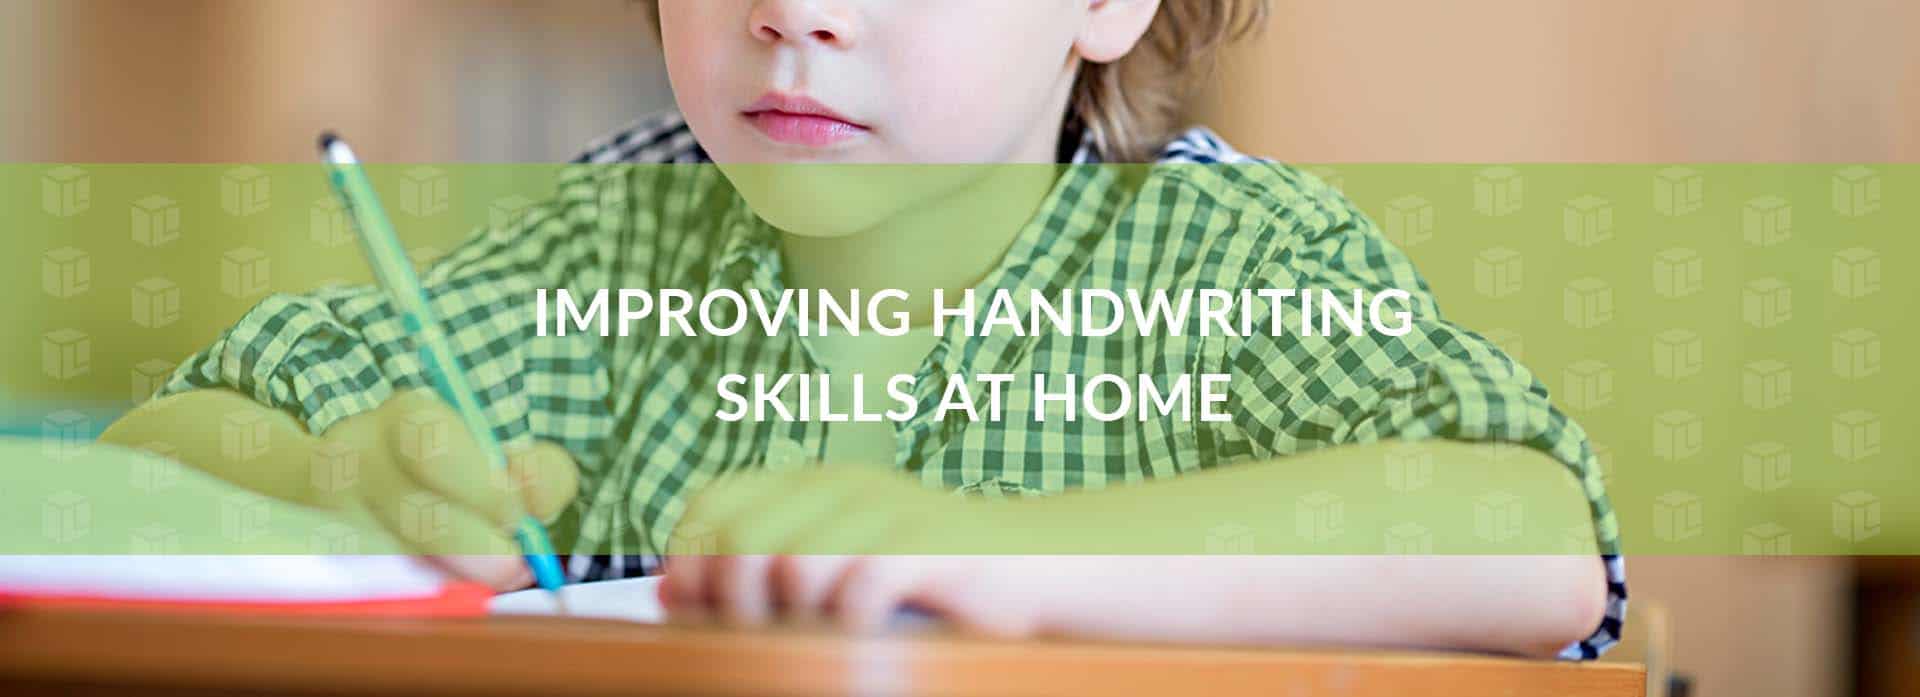 Improving Handwriting Skills At Home